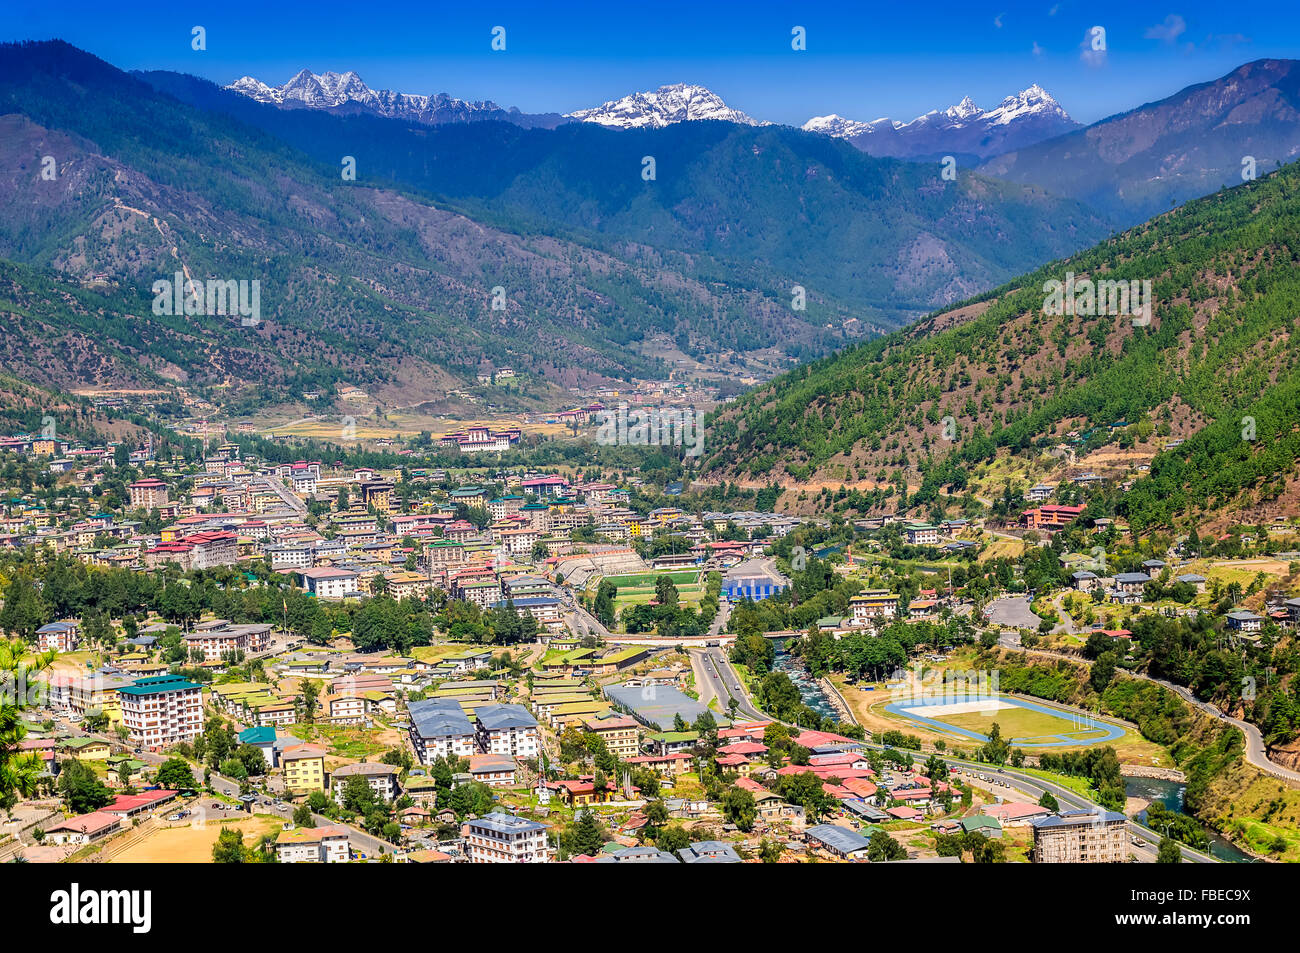 Ansicht der Hauptstadt Thimphu von Bhutan Tal des Himalaya und es ist umgeben von grünen Wald bedeckten Hügeln Schneeberge mit Textfreiraum Stockfoto